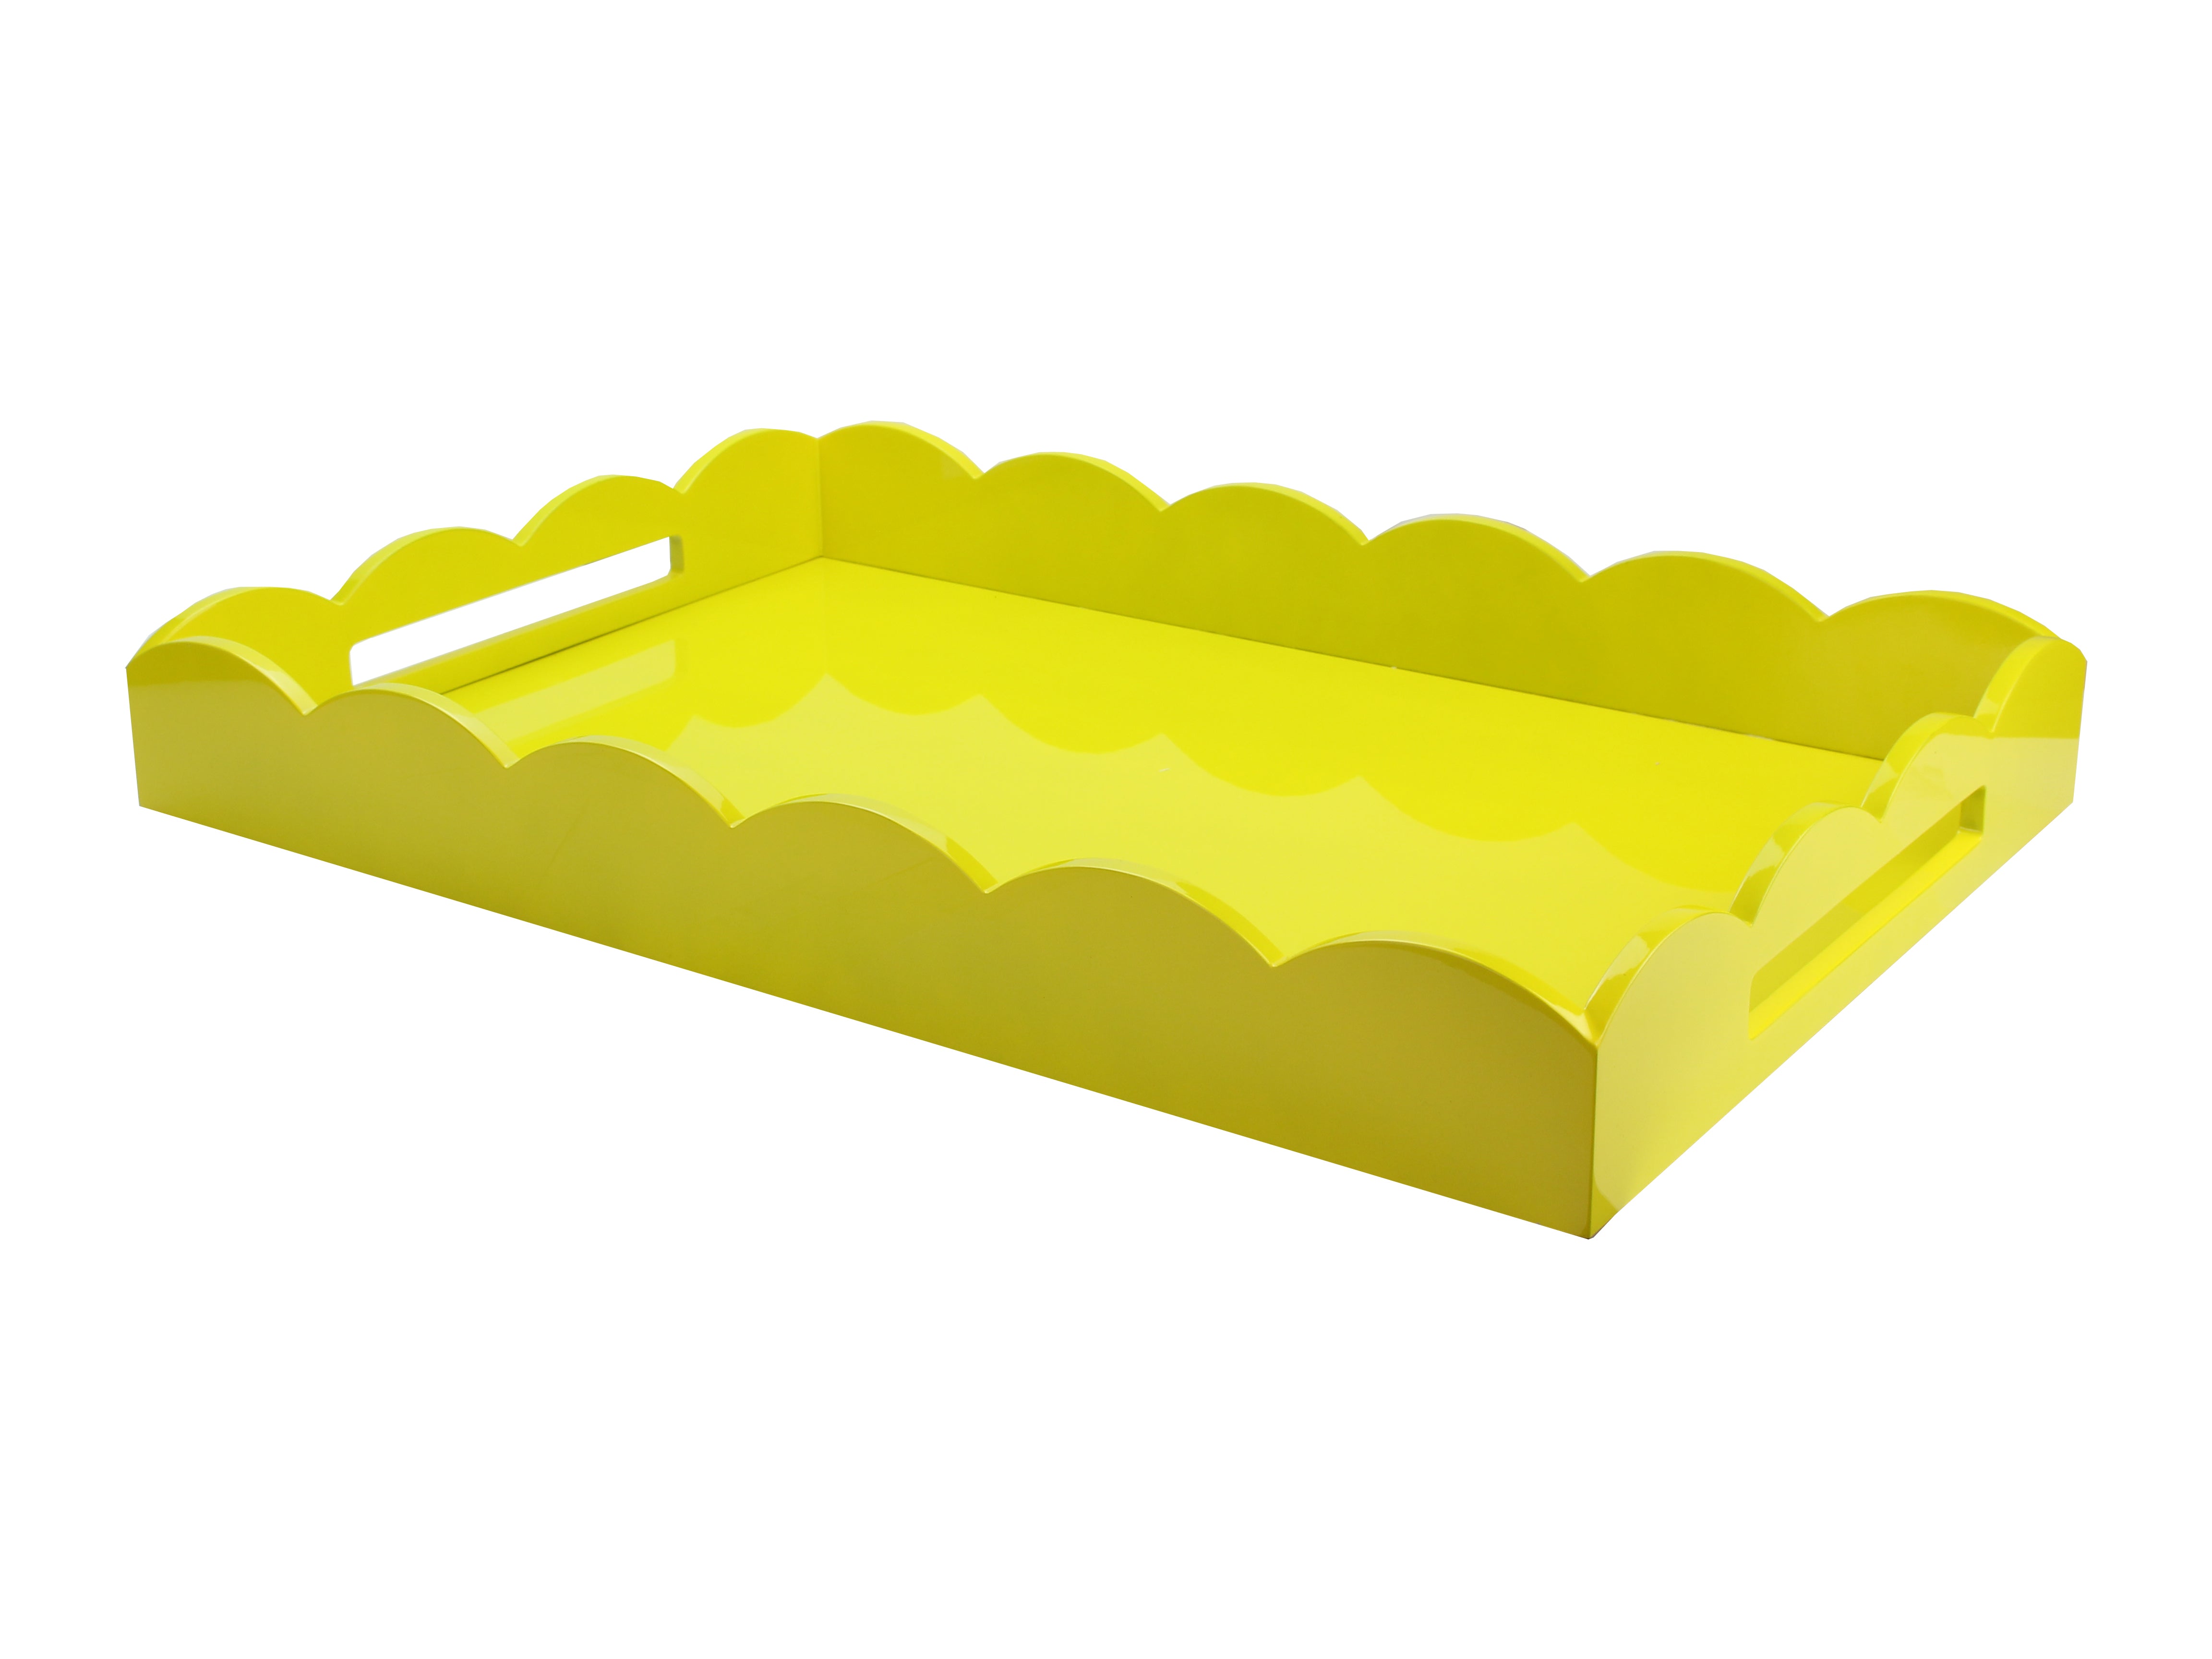 17x13 Scalloped Tray Yellow